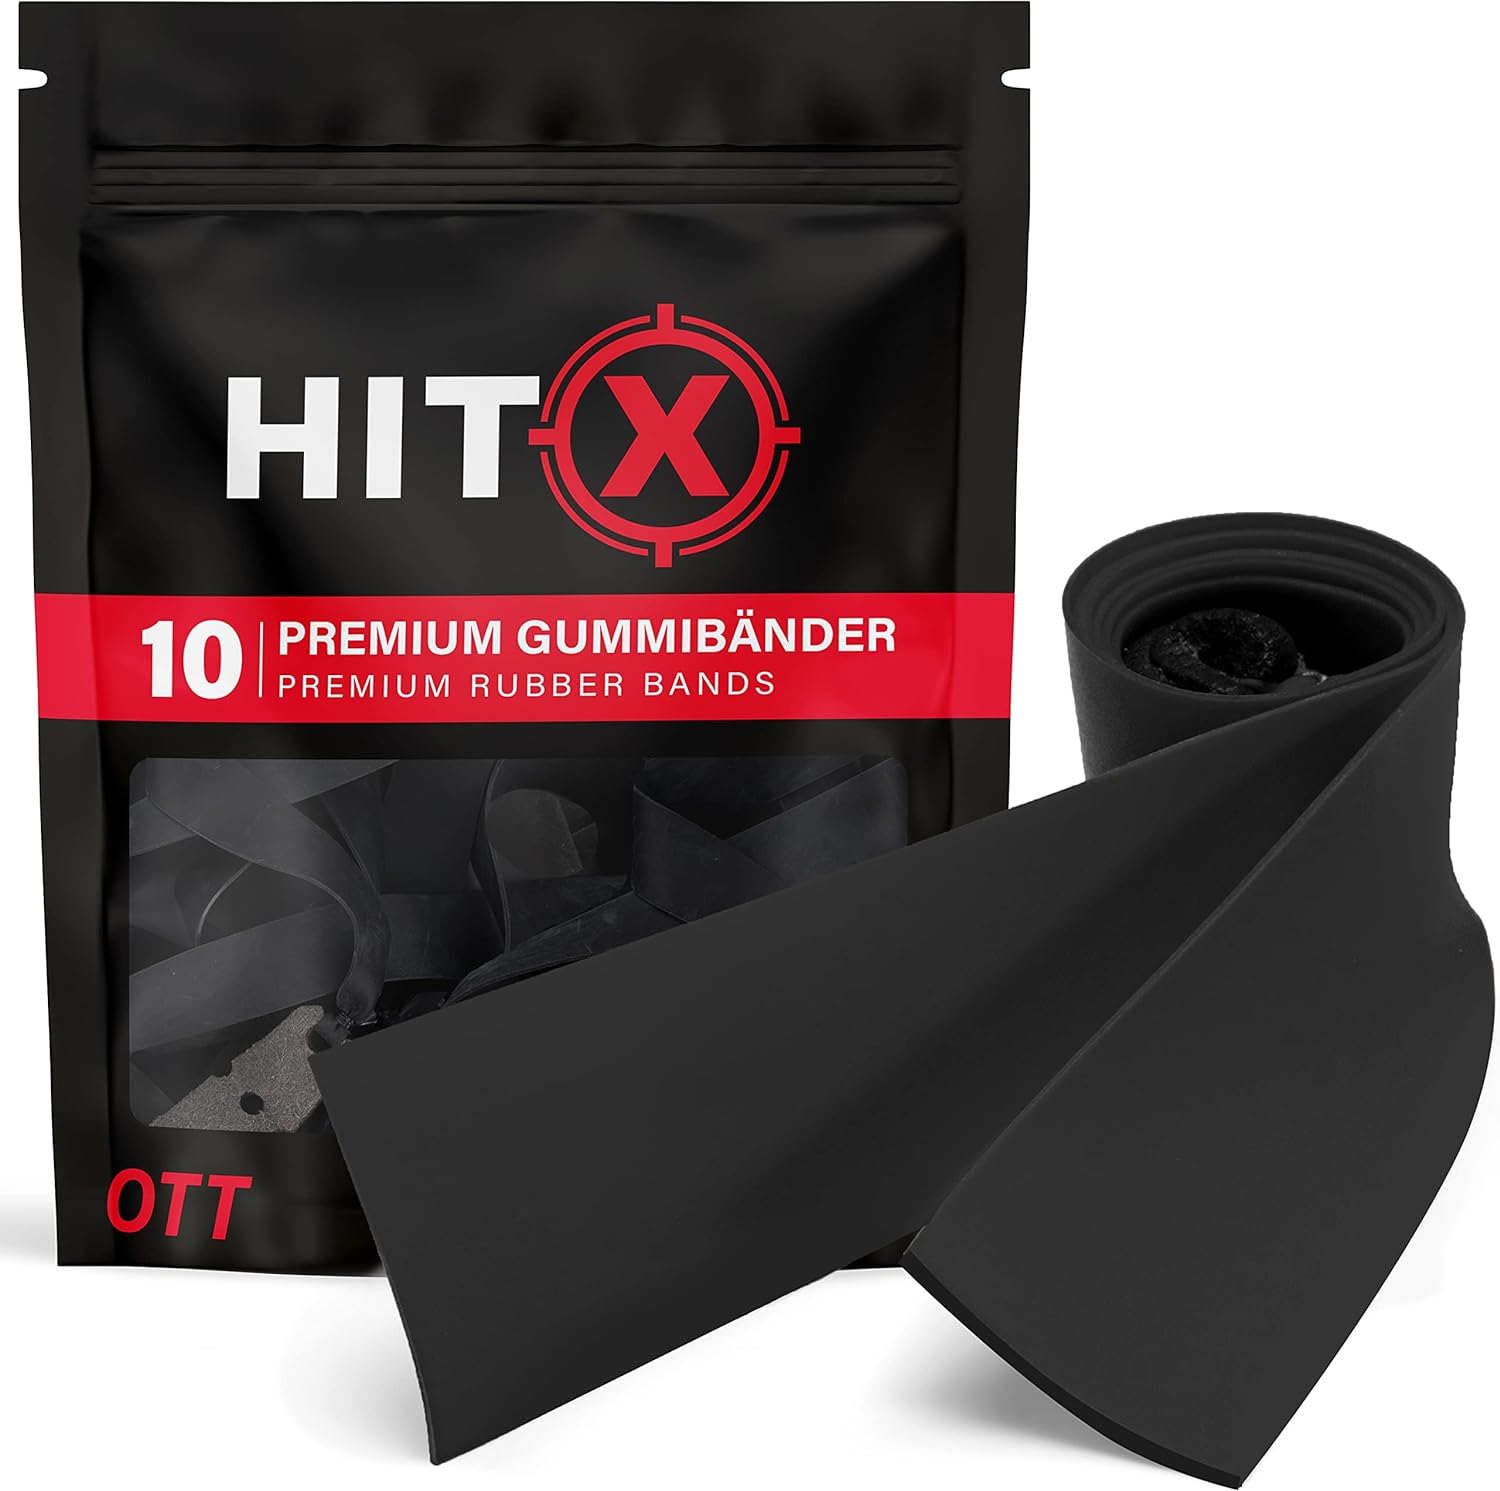 Slingshot gummiband från HITX®